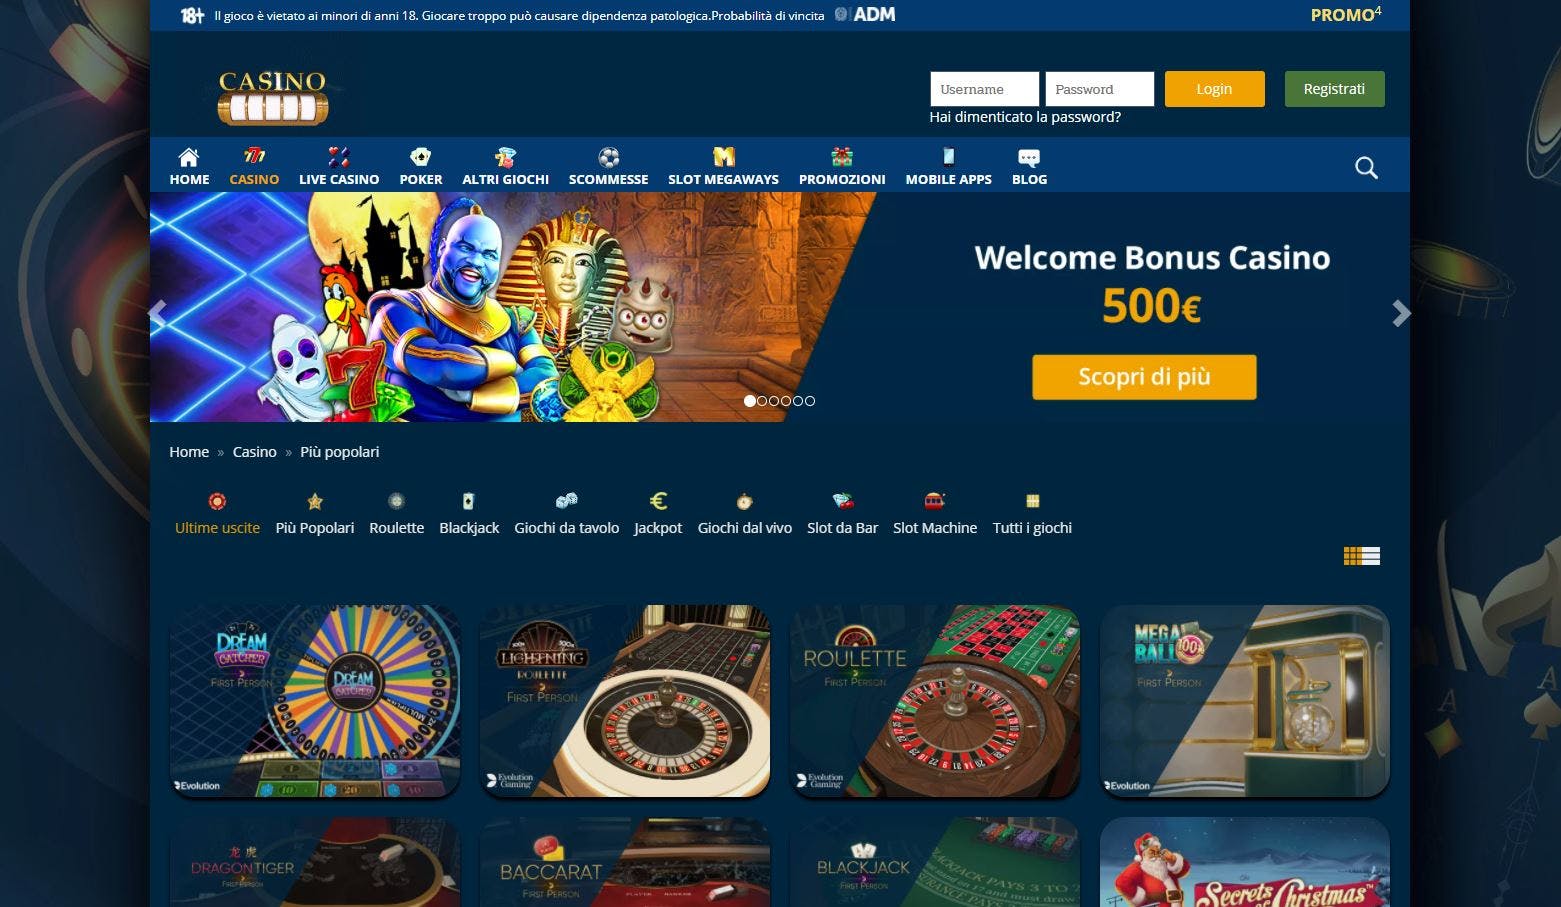 Slot online con CasinoMania